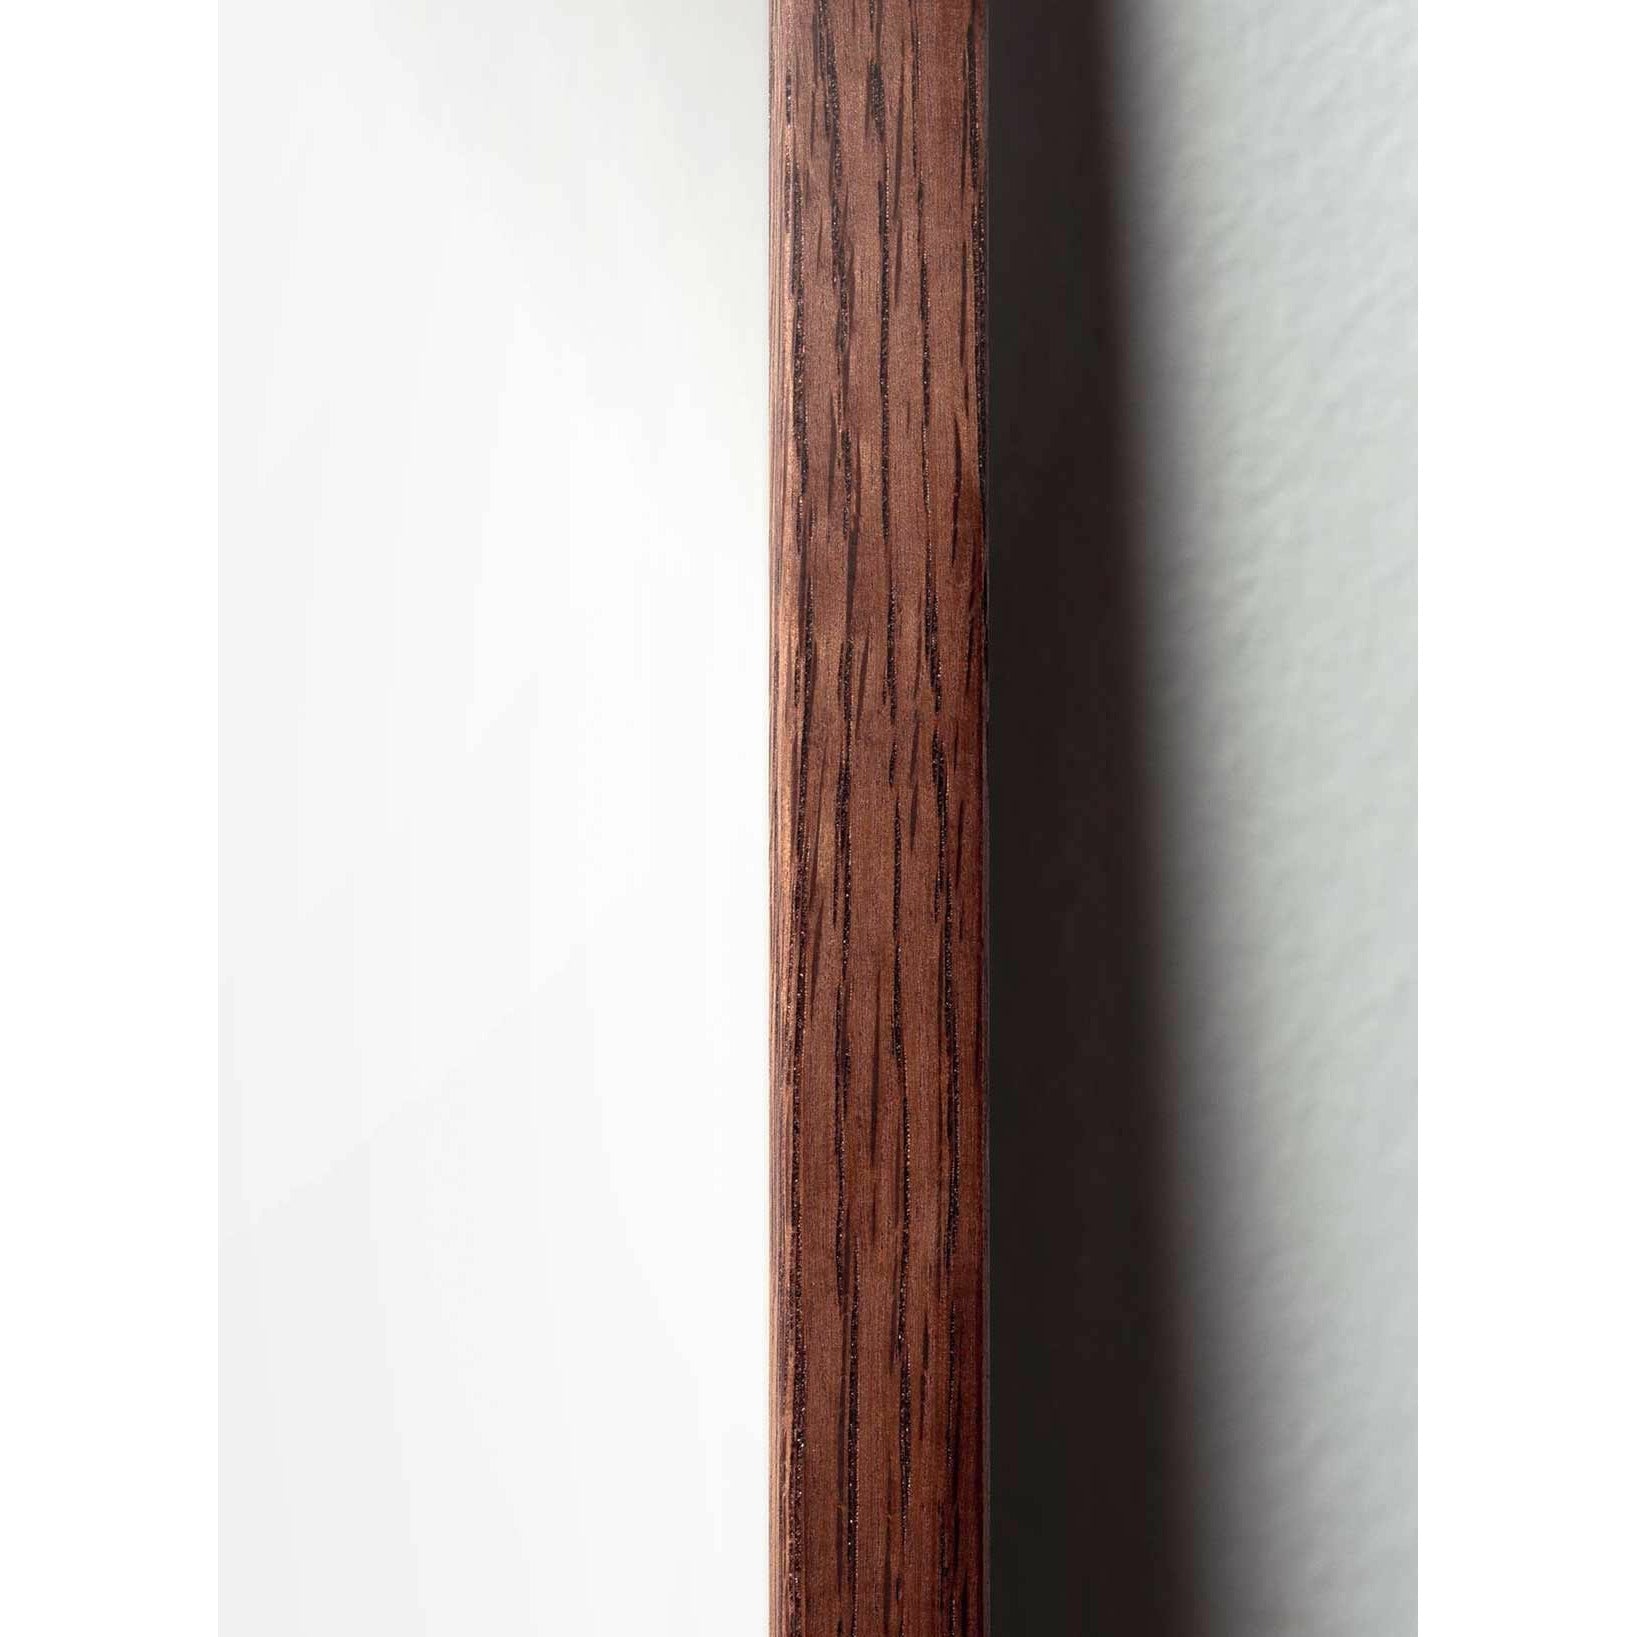 Póster clásico de BrainChild Teddy Bear, marco hecho de madera oscura 50x70 cm, fondo de color arena